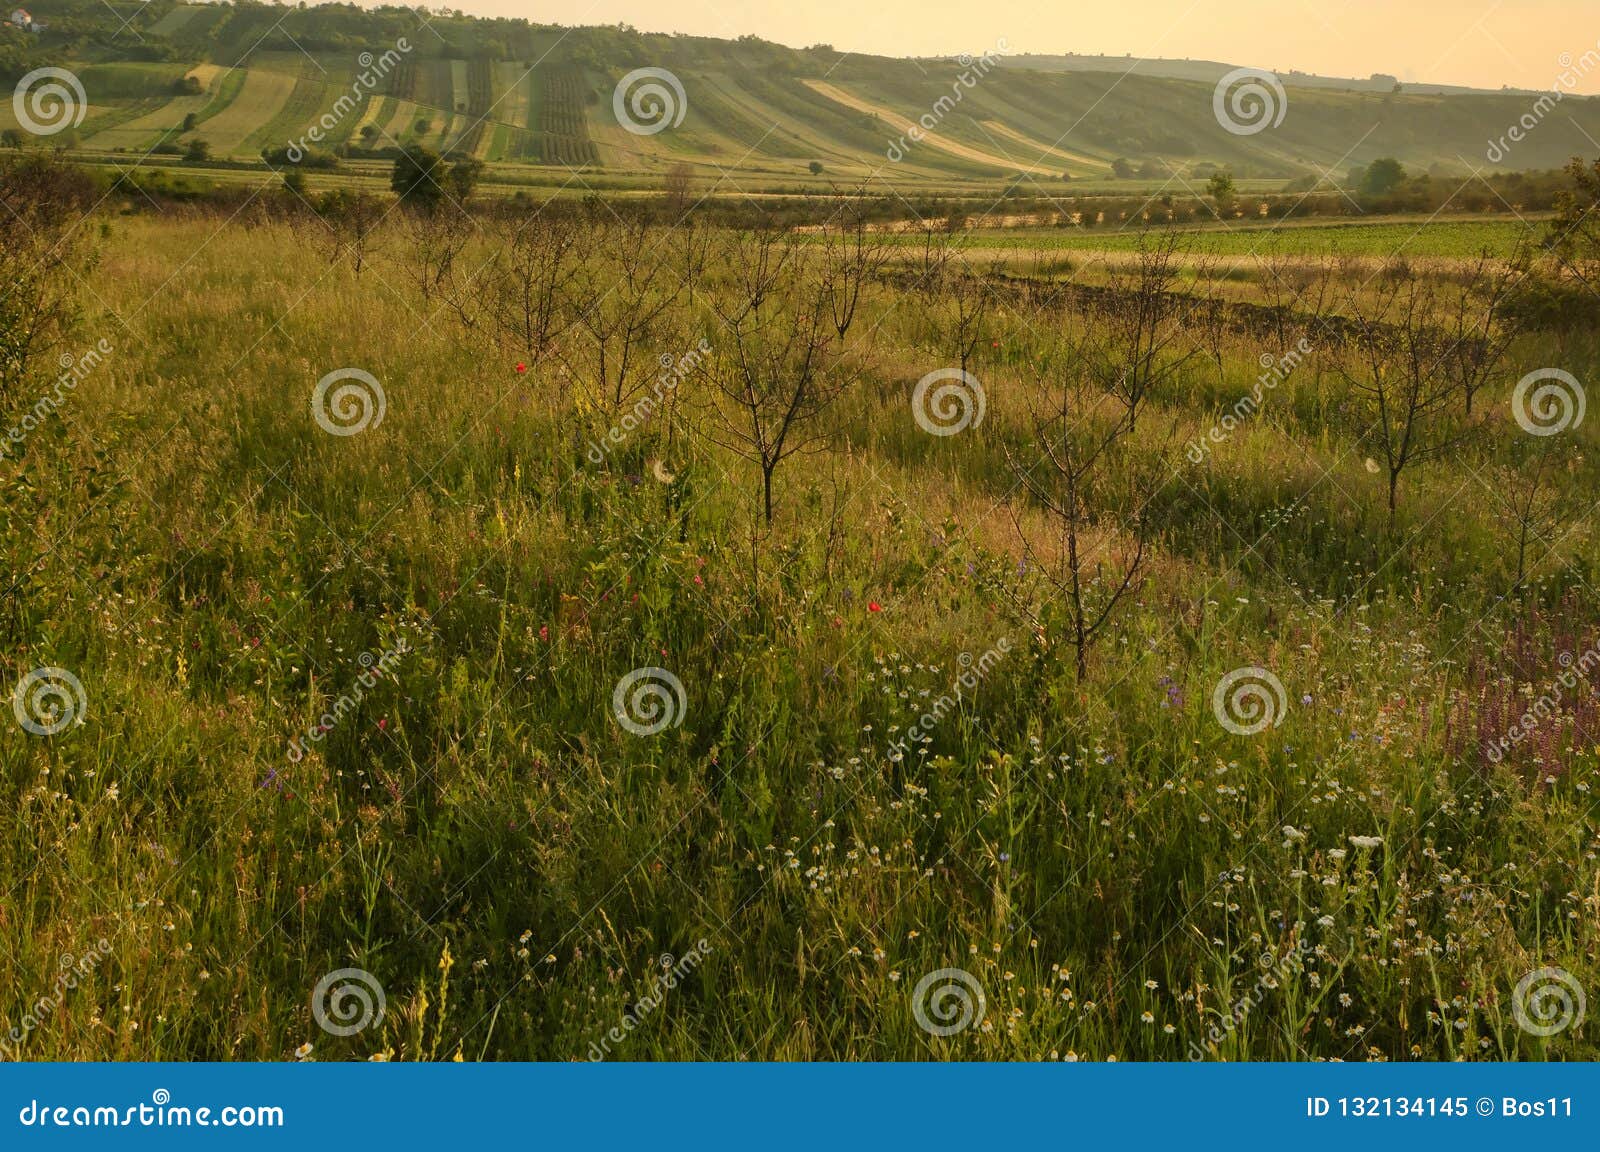 extensive rural landscape